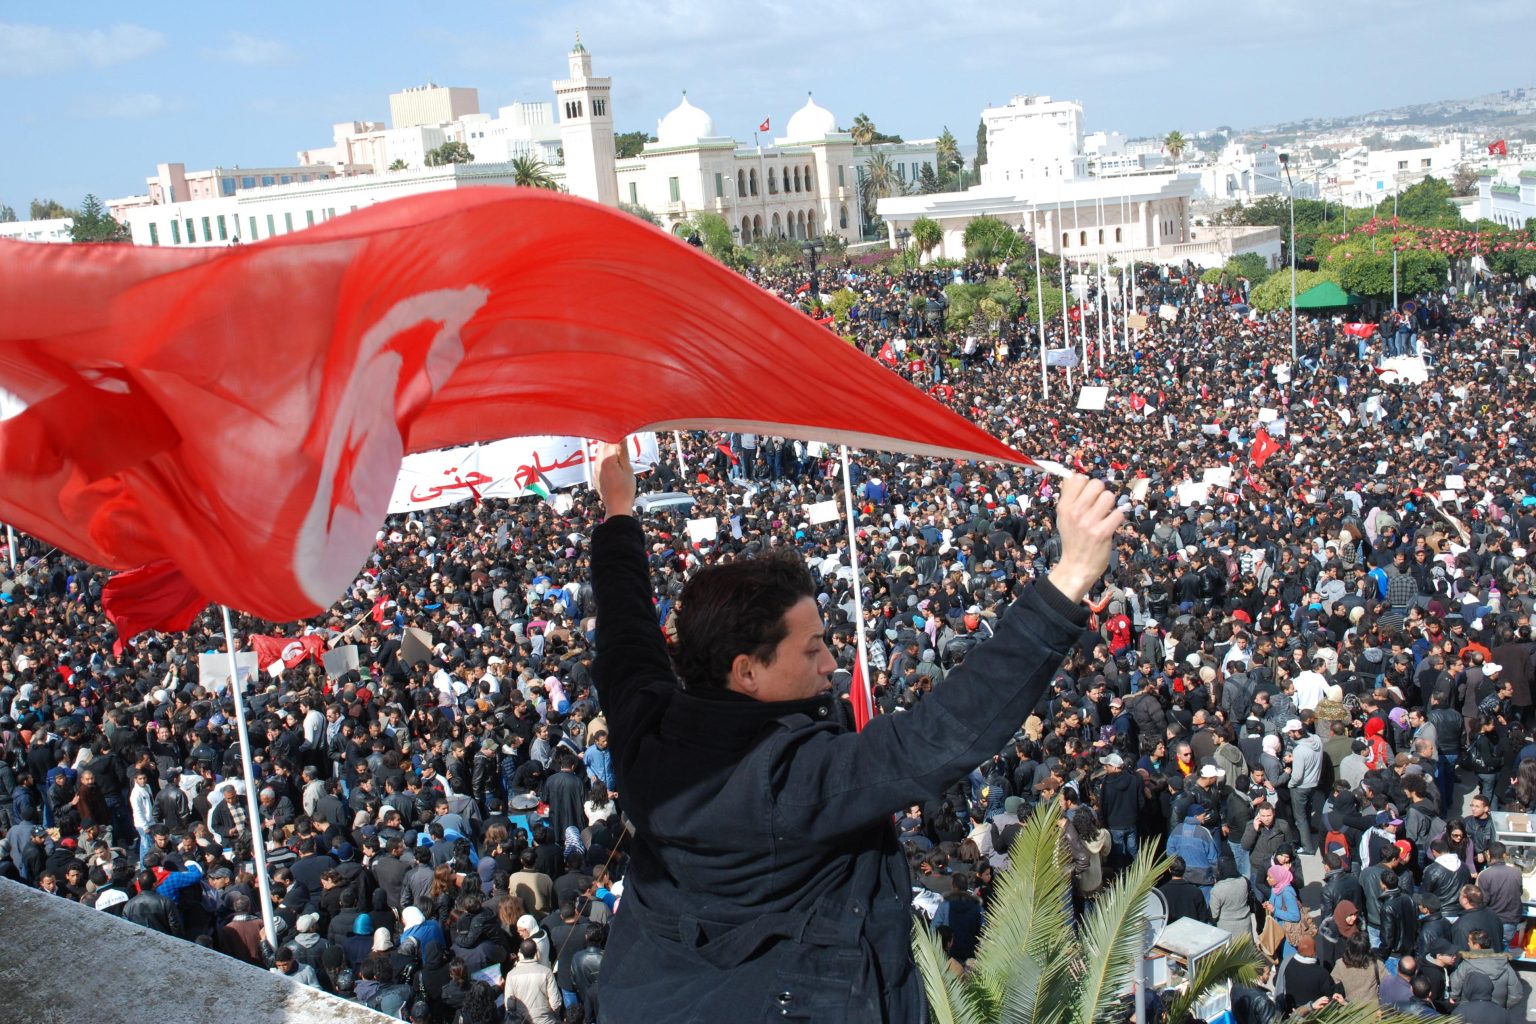 لماذا نجحت تونس بالانتقال الديمقراطي وفشلت غيرها من دول الربيع العربي؟ توماس فريدمان يجيب